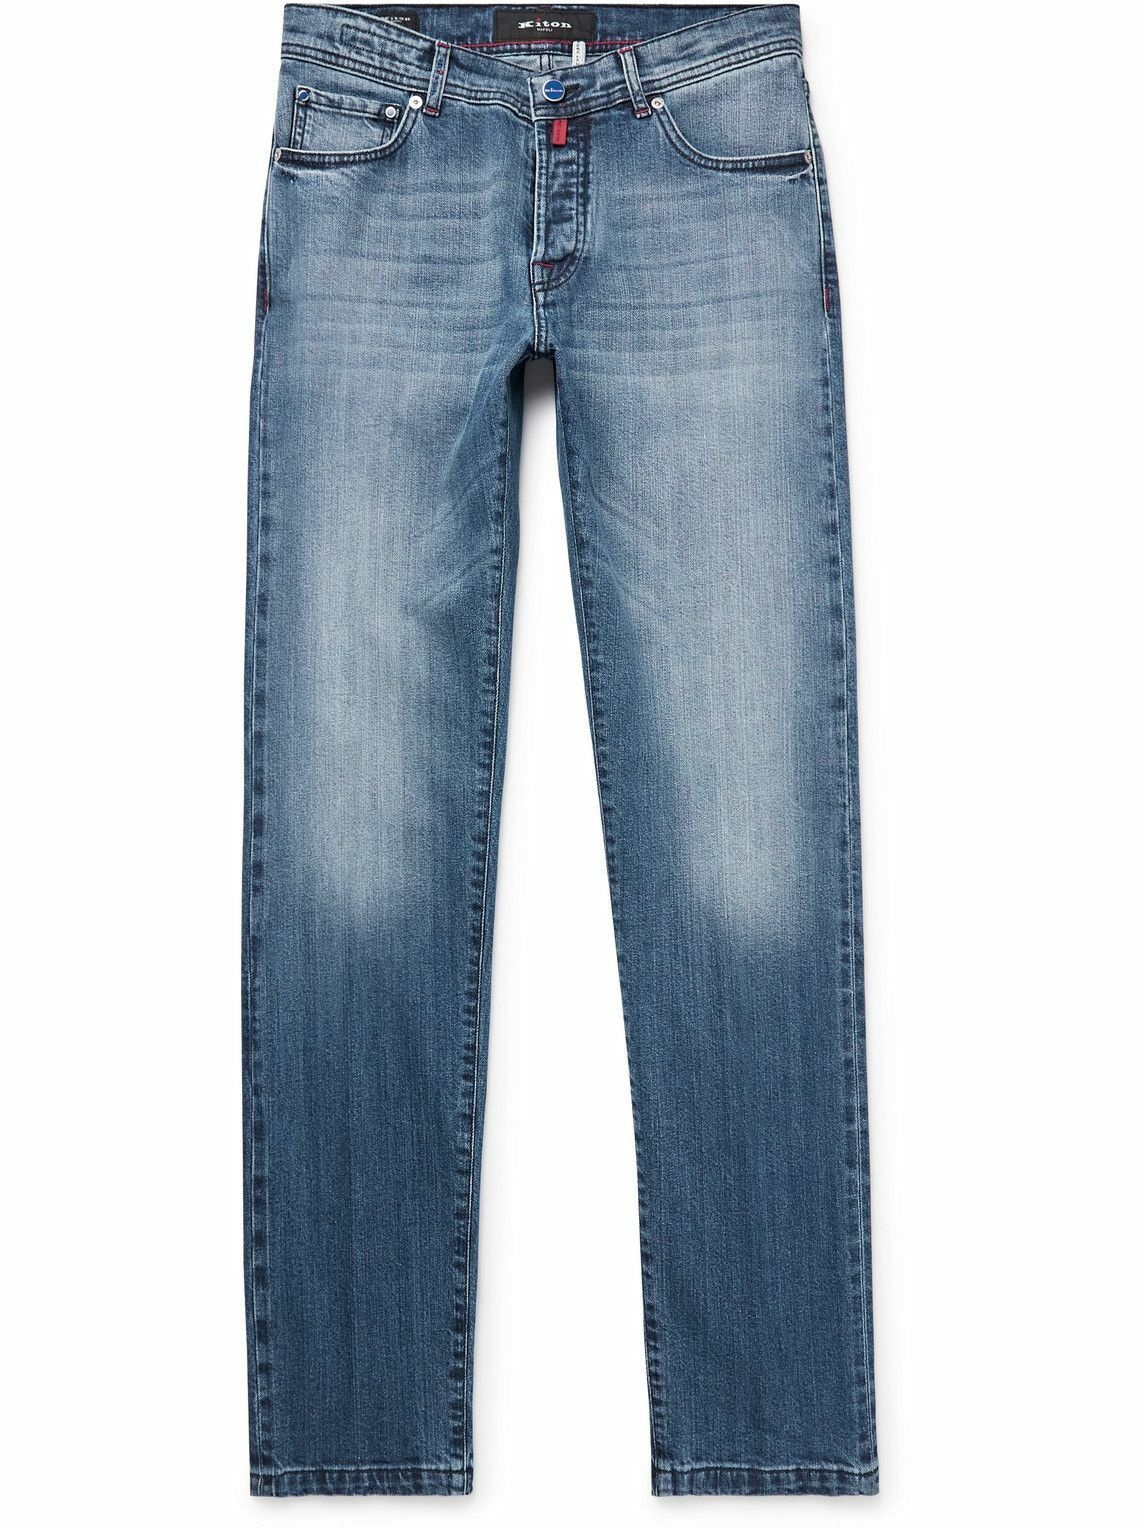 Kiton - Slim-Fit Straight-Leg Selvedge Jeans - Blue Kiton